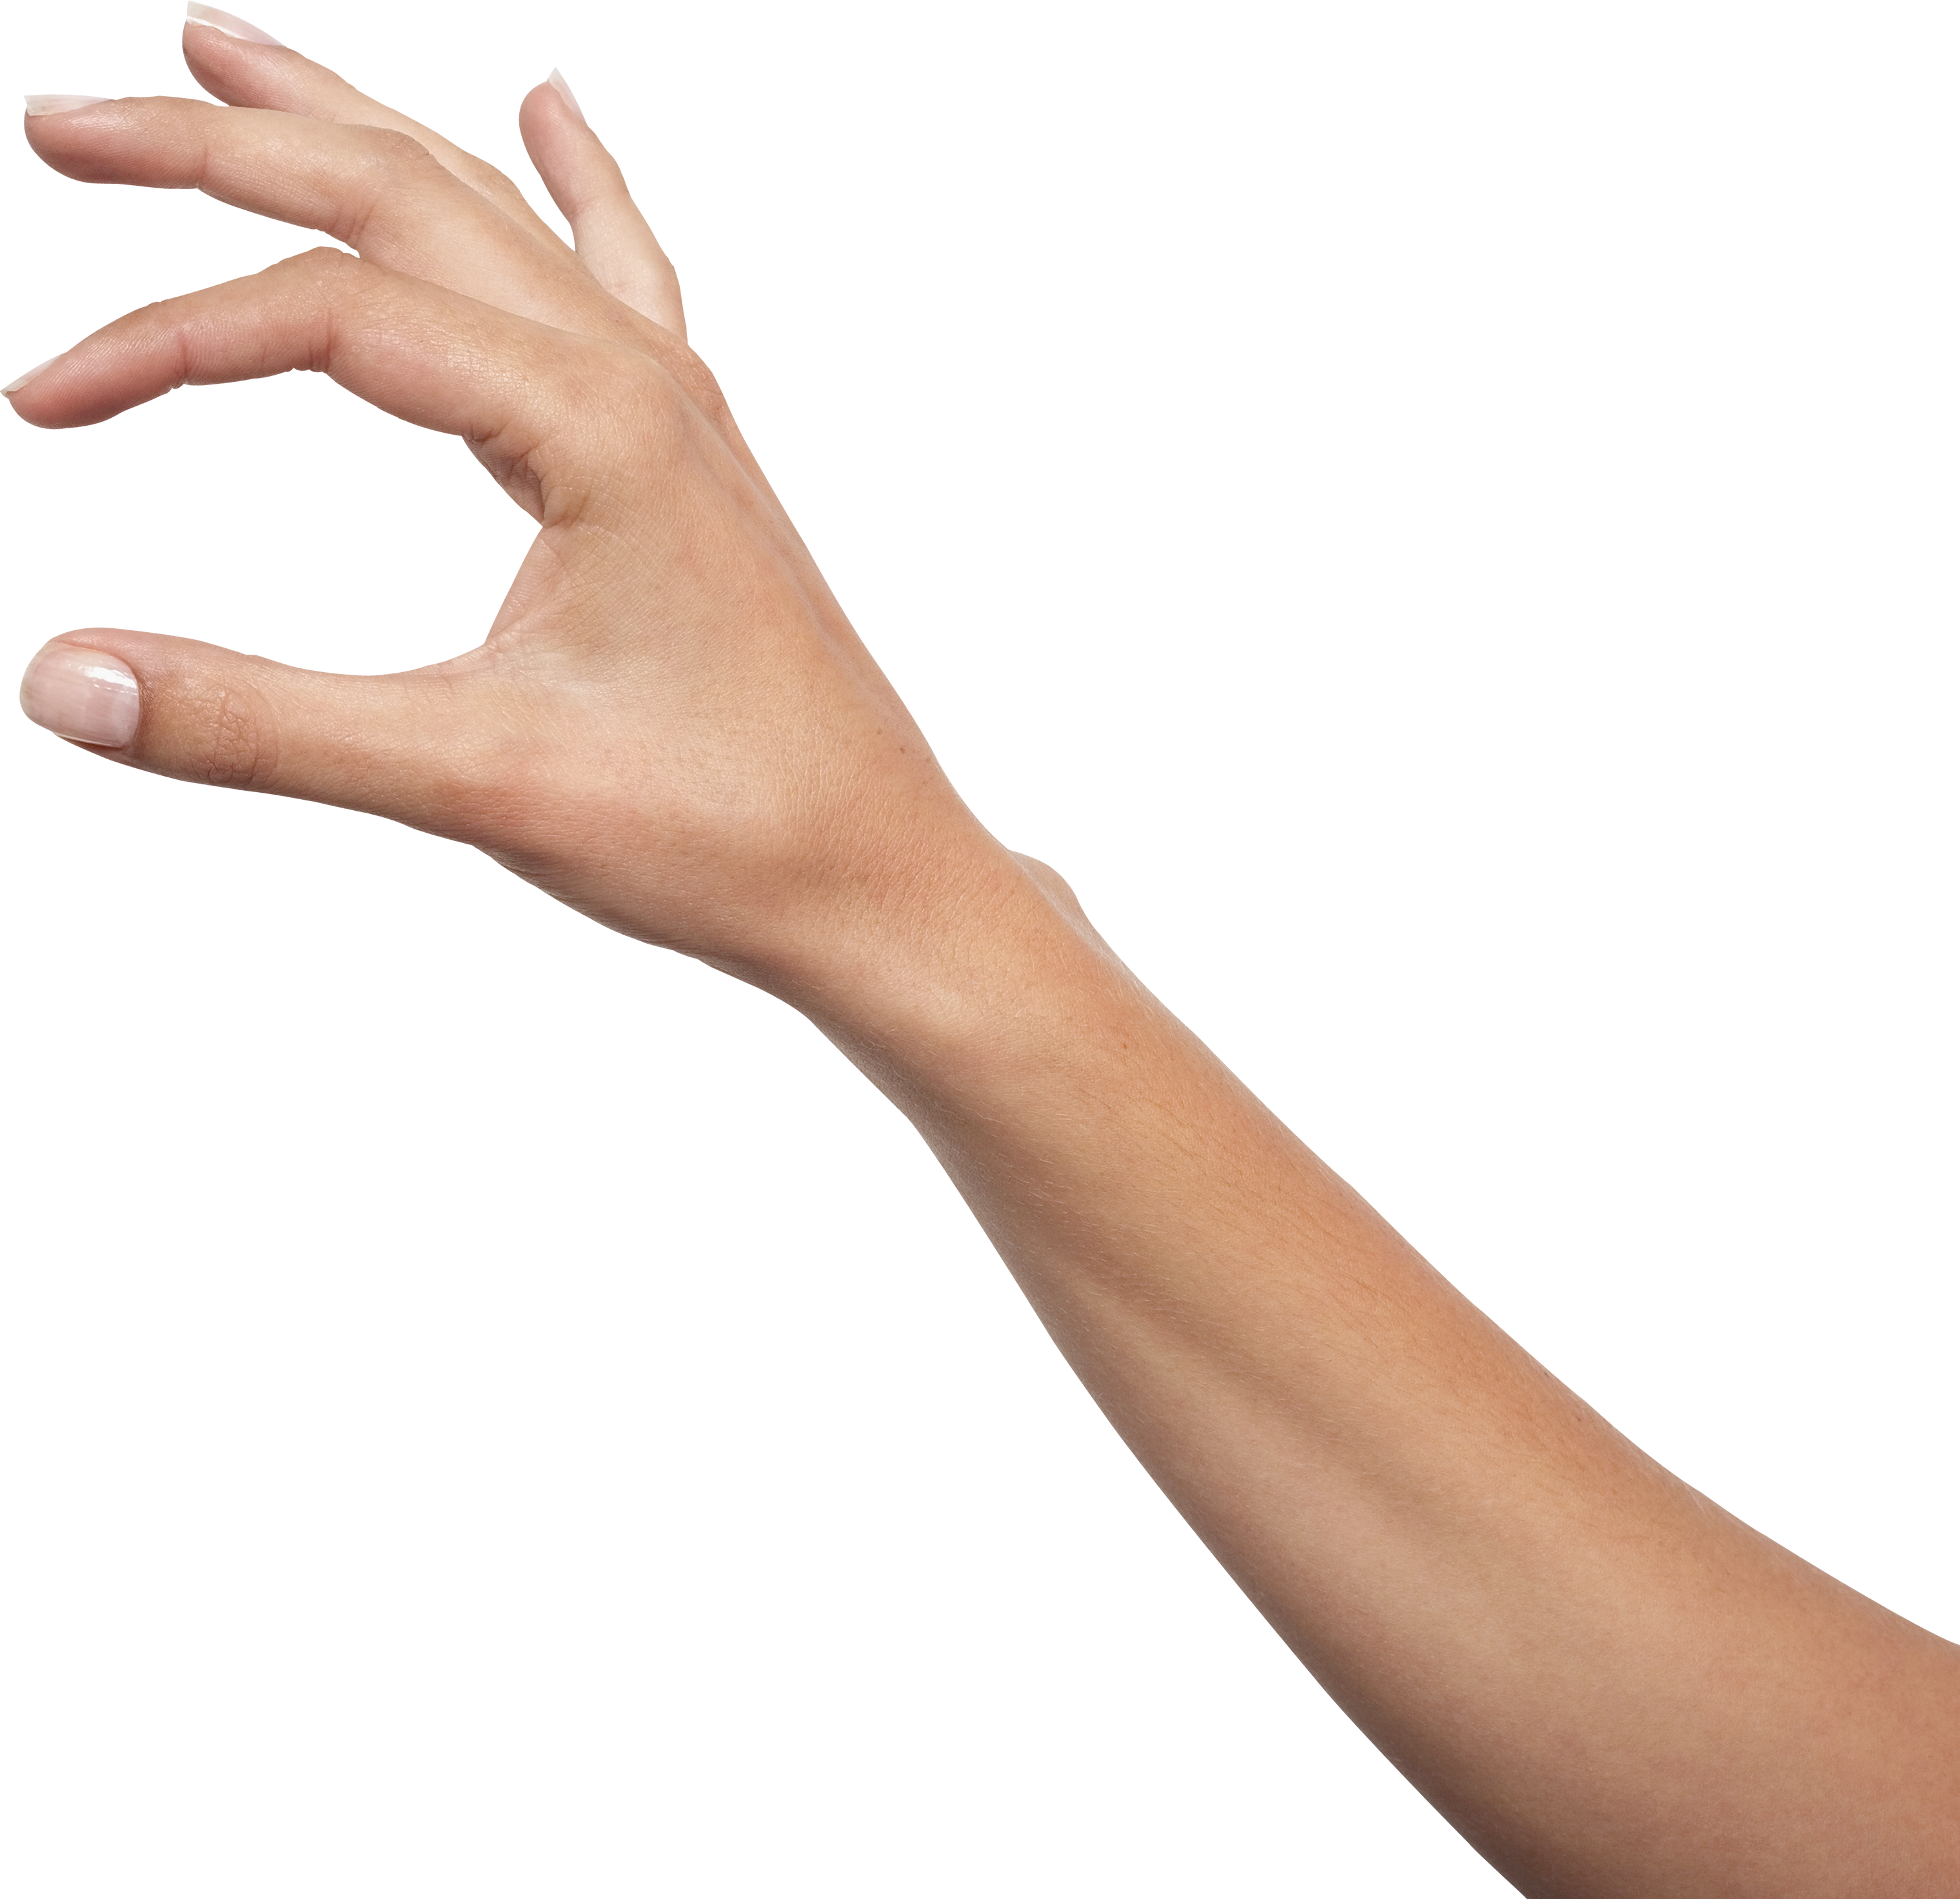 Женская рука бесплатно PNG Image